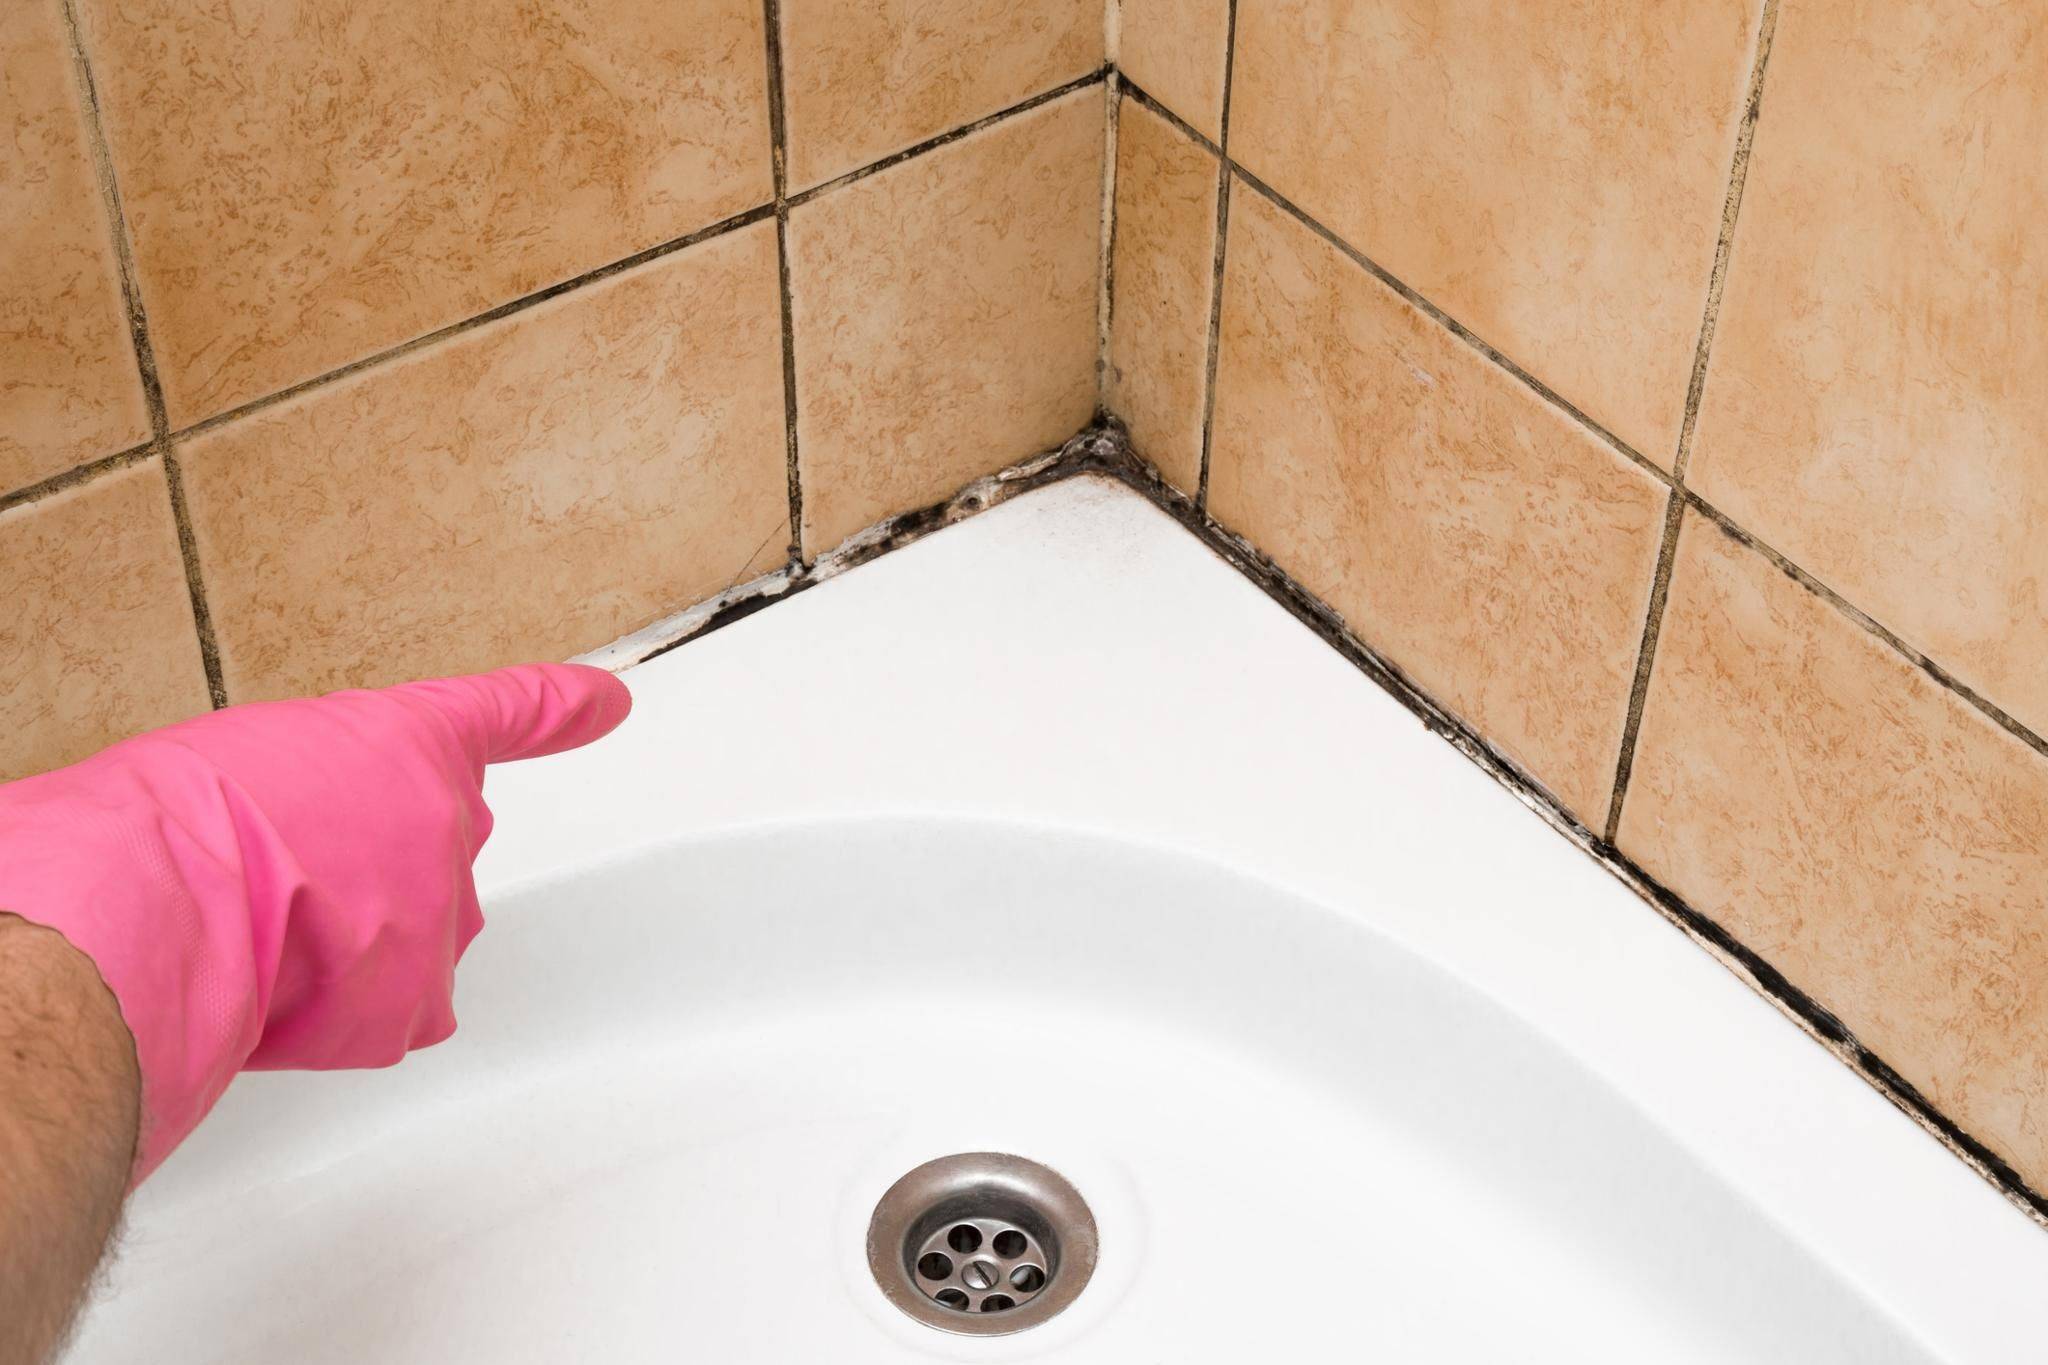 Как избавиться от плесени в ванной комнате: эффективные средства от грибка